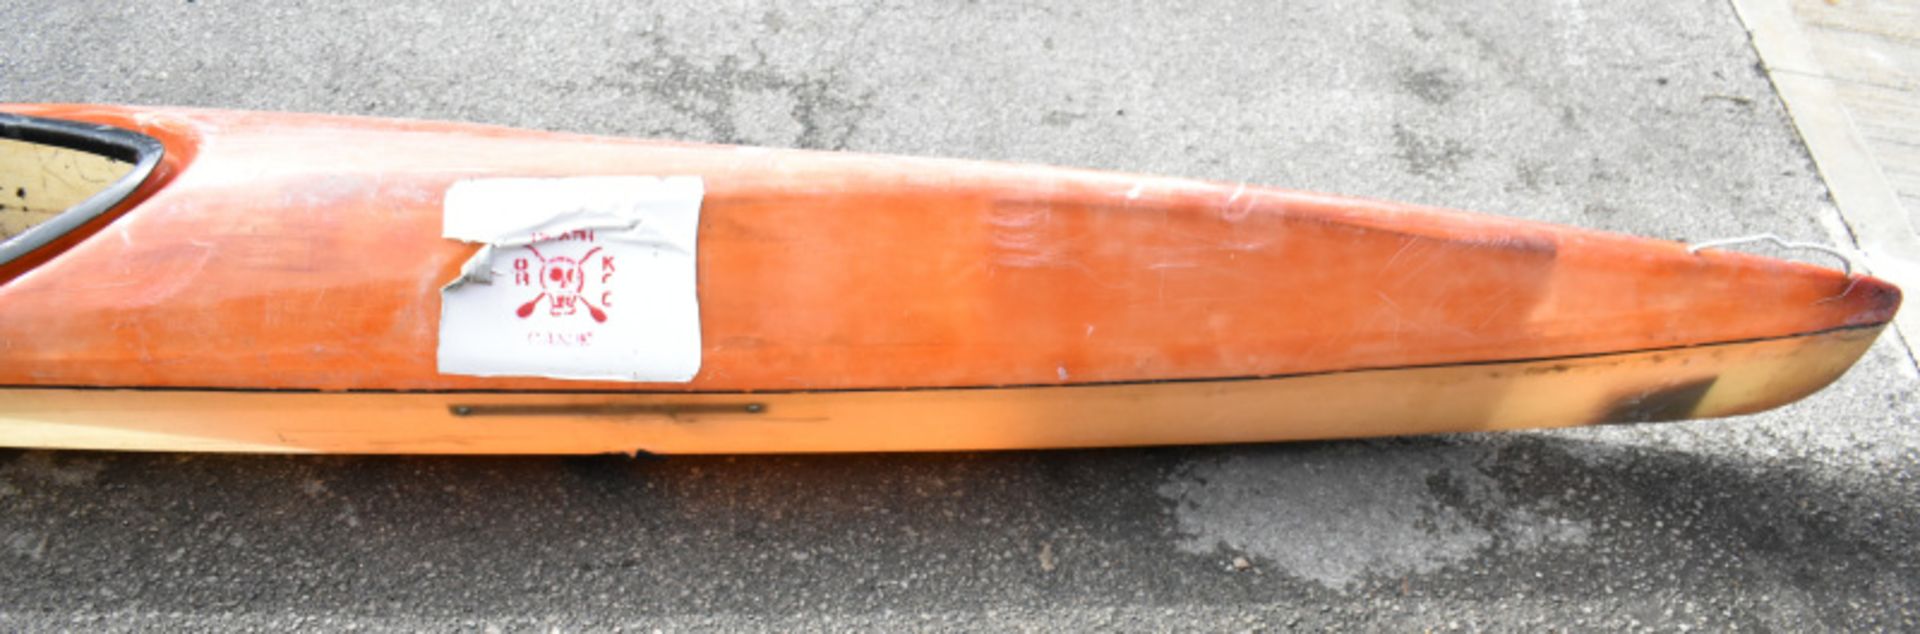 Baron Marlin Kayak - orange - no paddles - Image 8 of 13